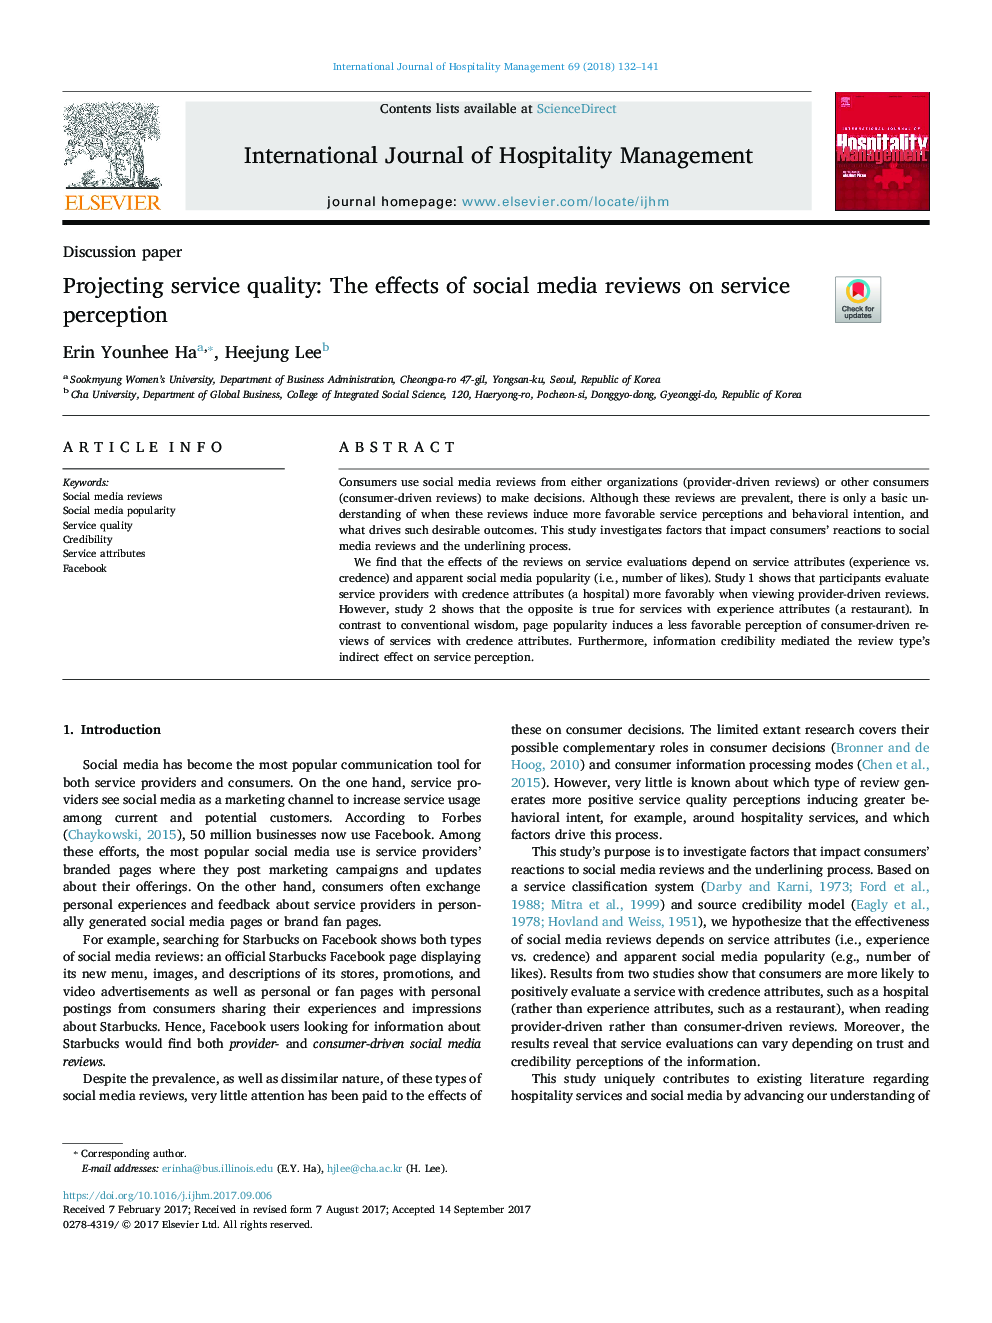 کیفیت خدمات طراحی: اثرات بررسی رسانه های اجتماعی بر ادراک سرویس 